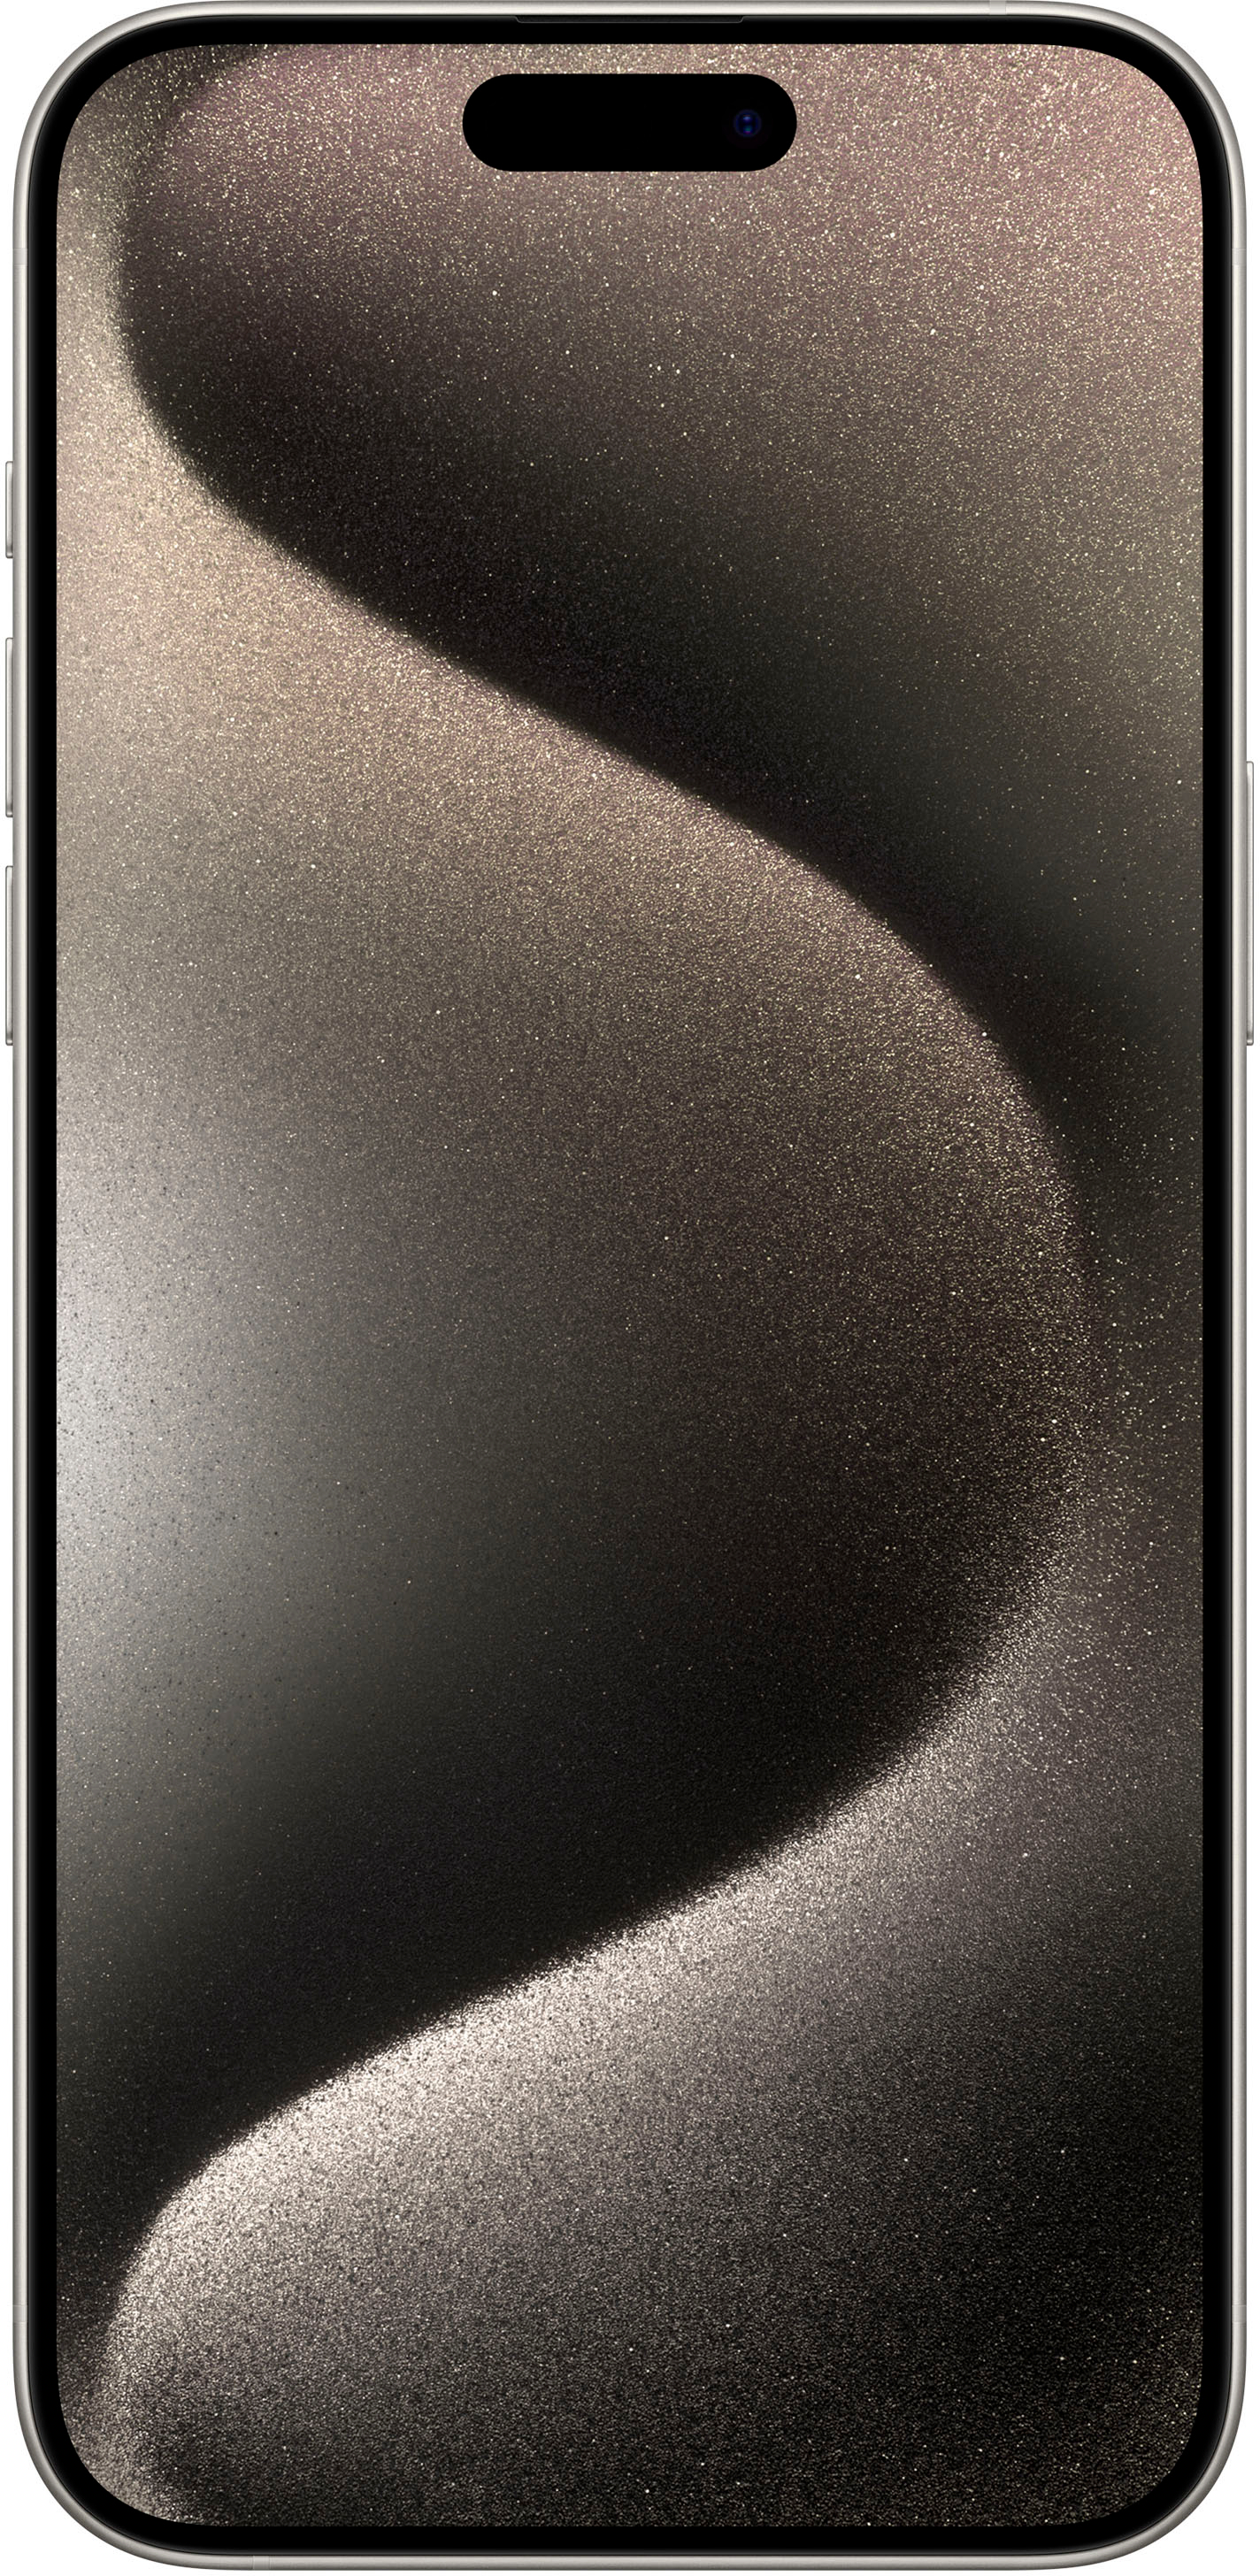 Apple iPhone 15 Pro Max - 512 GB - Blue Titanium (Verizon) for